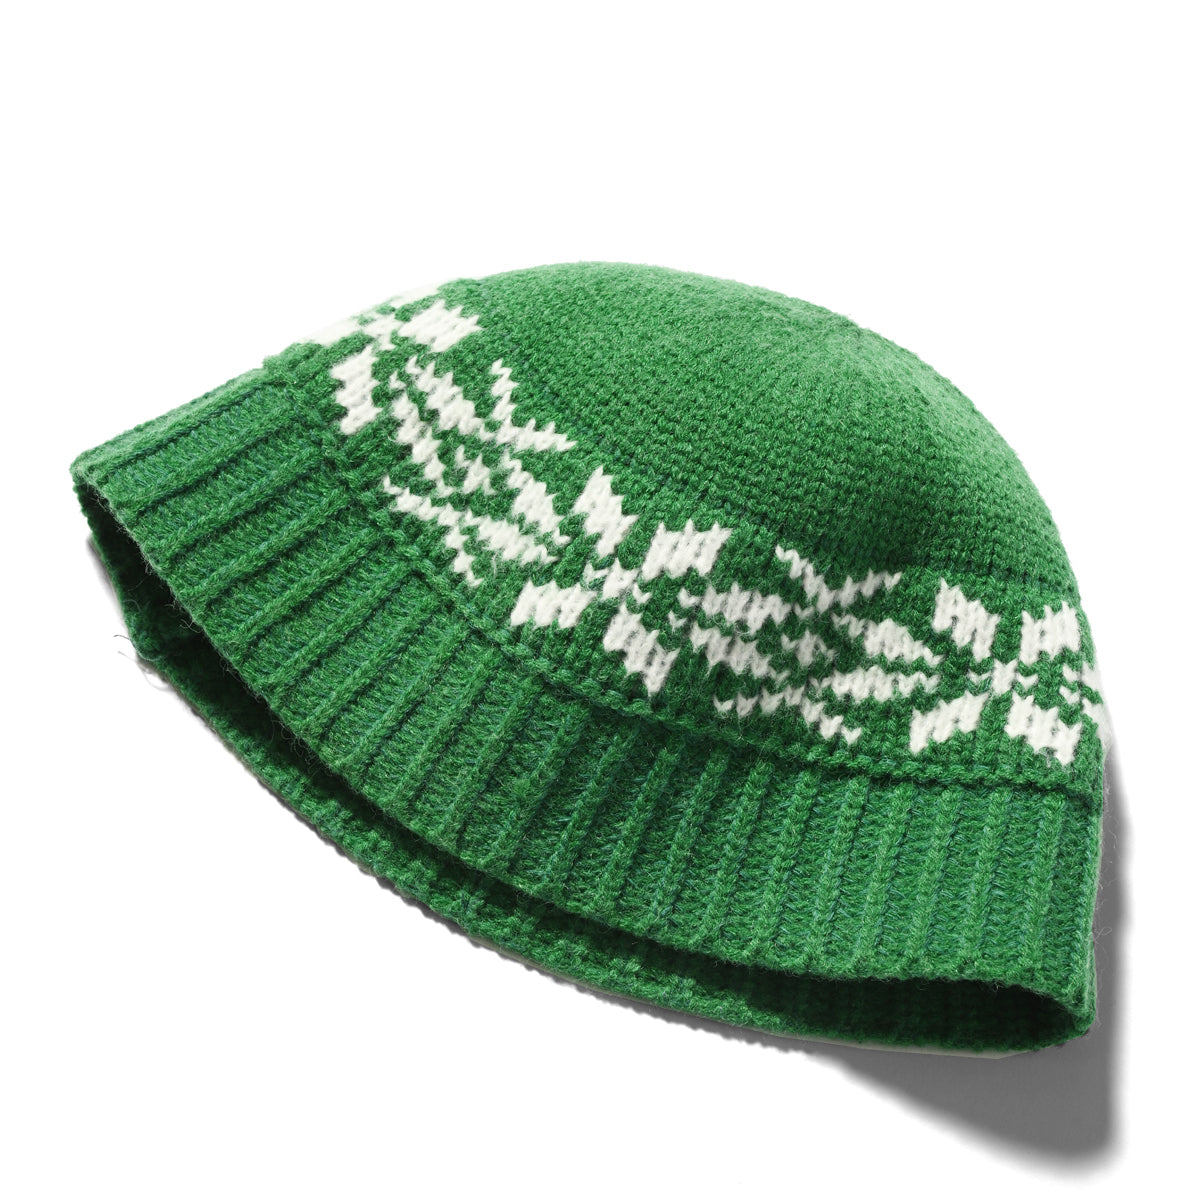 主場比賽-針織帽綠色